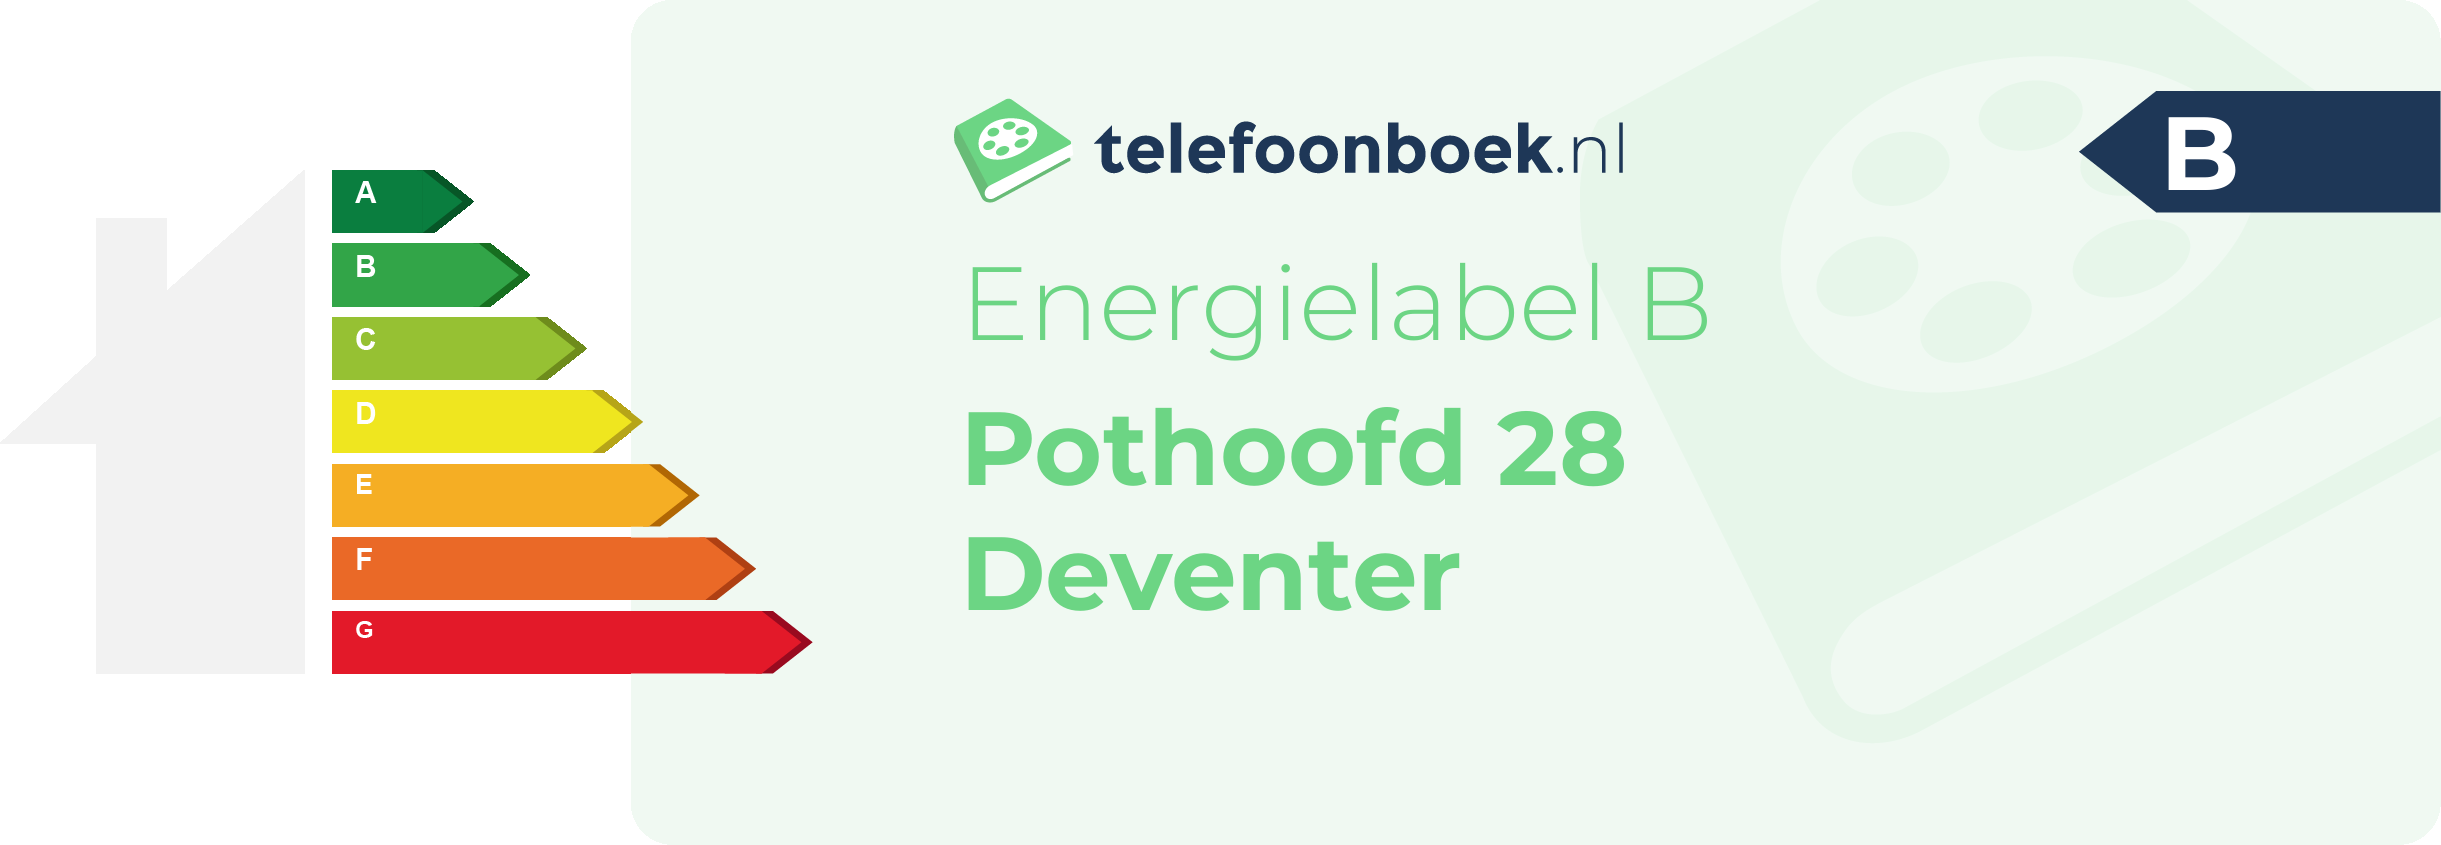 Energielabel Pothoofd 28 Deventer